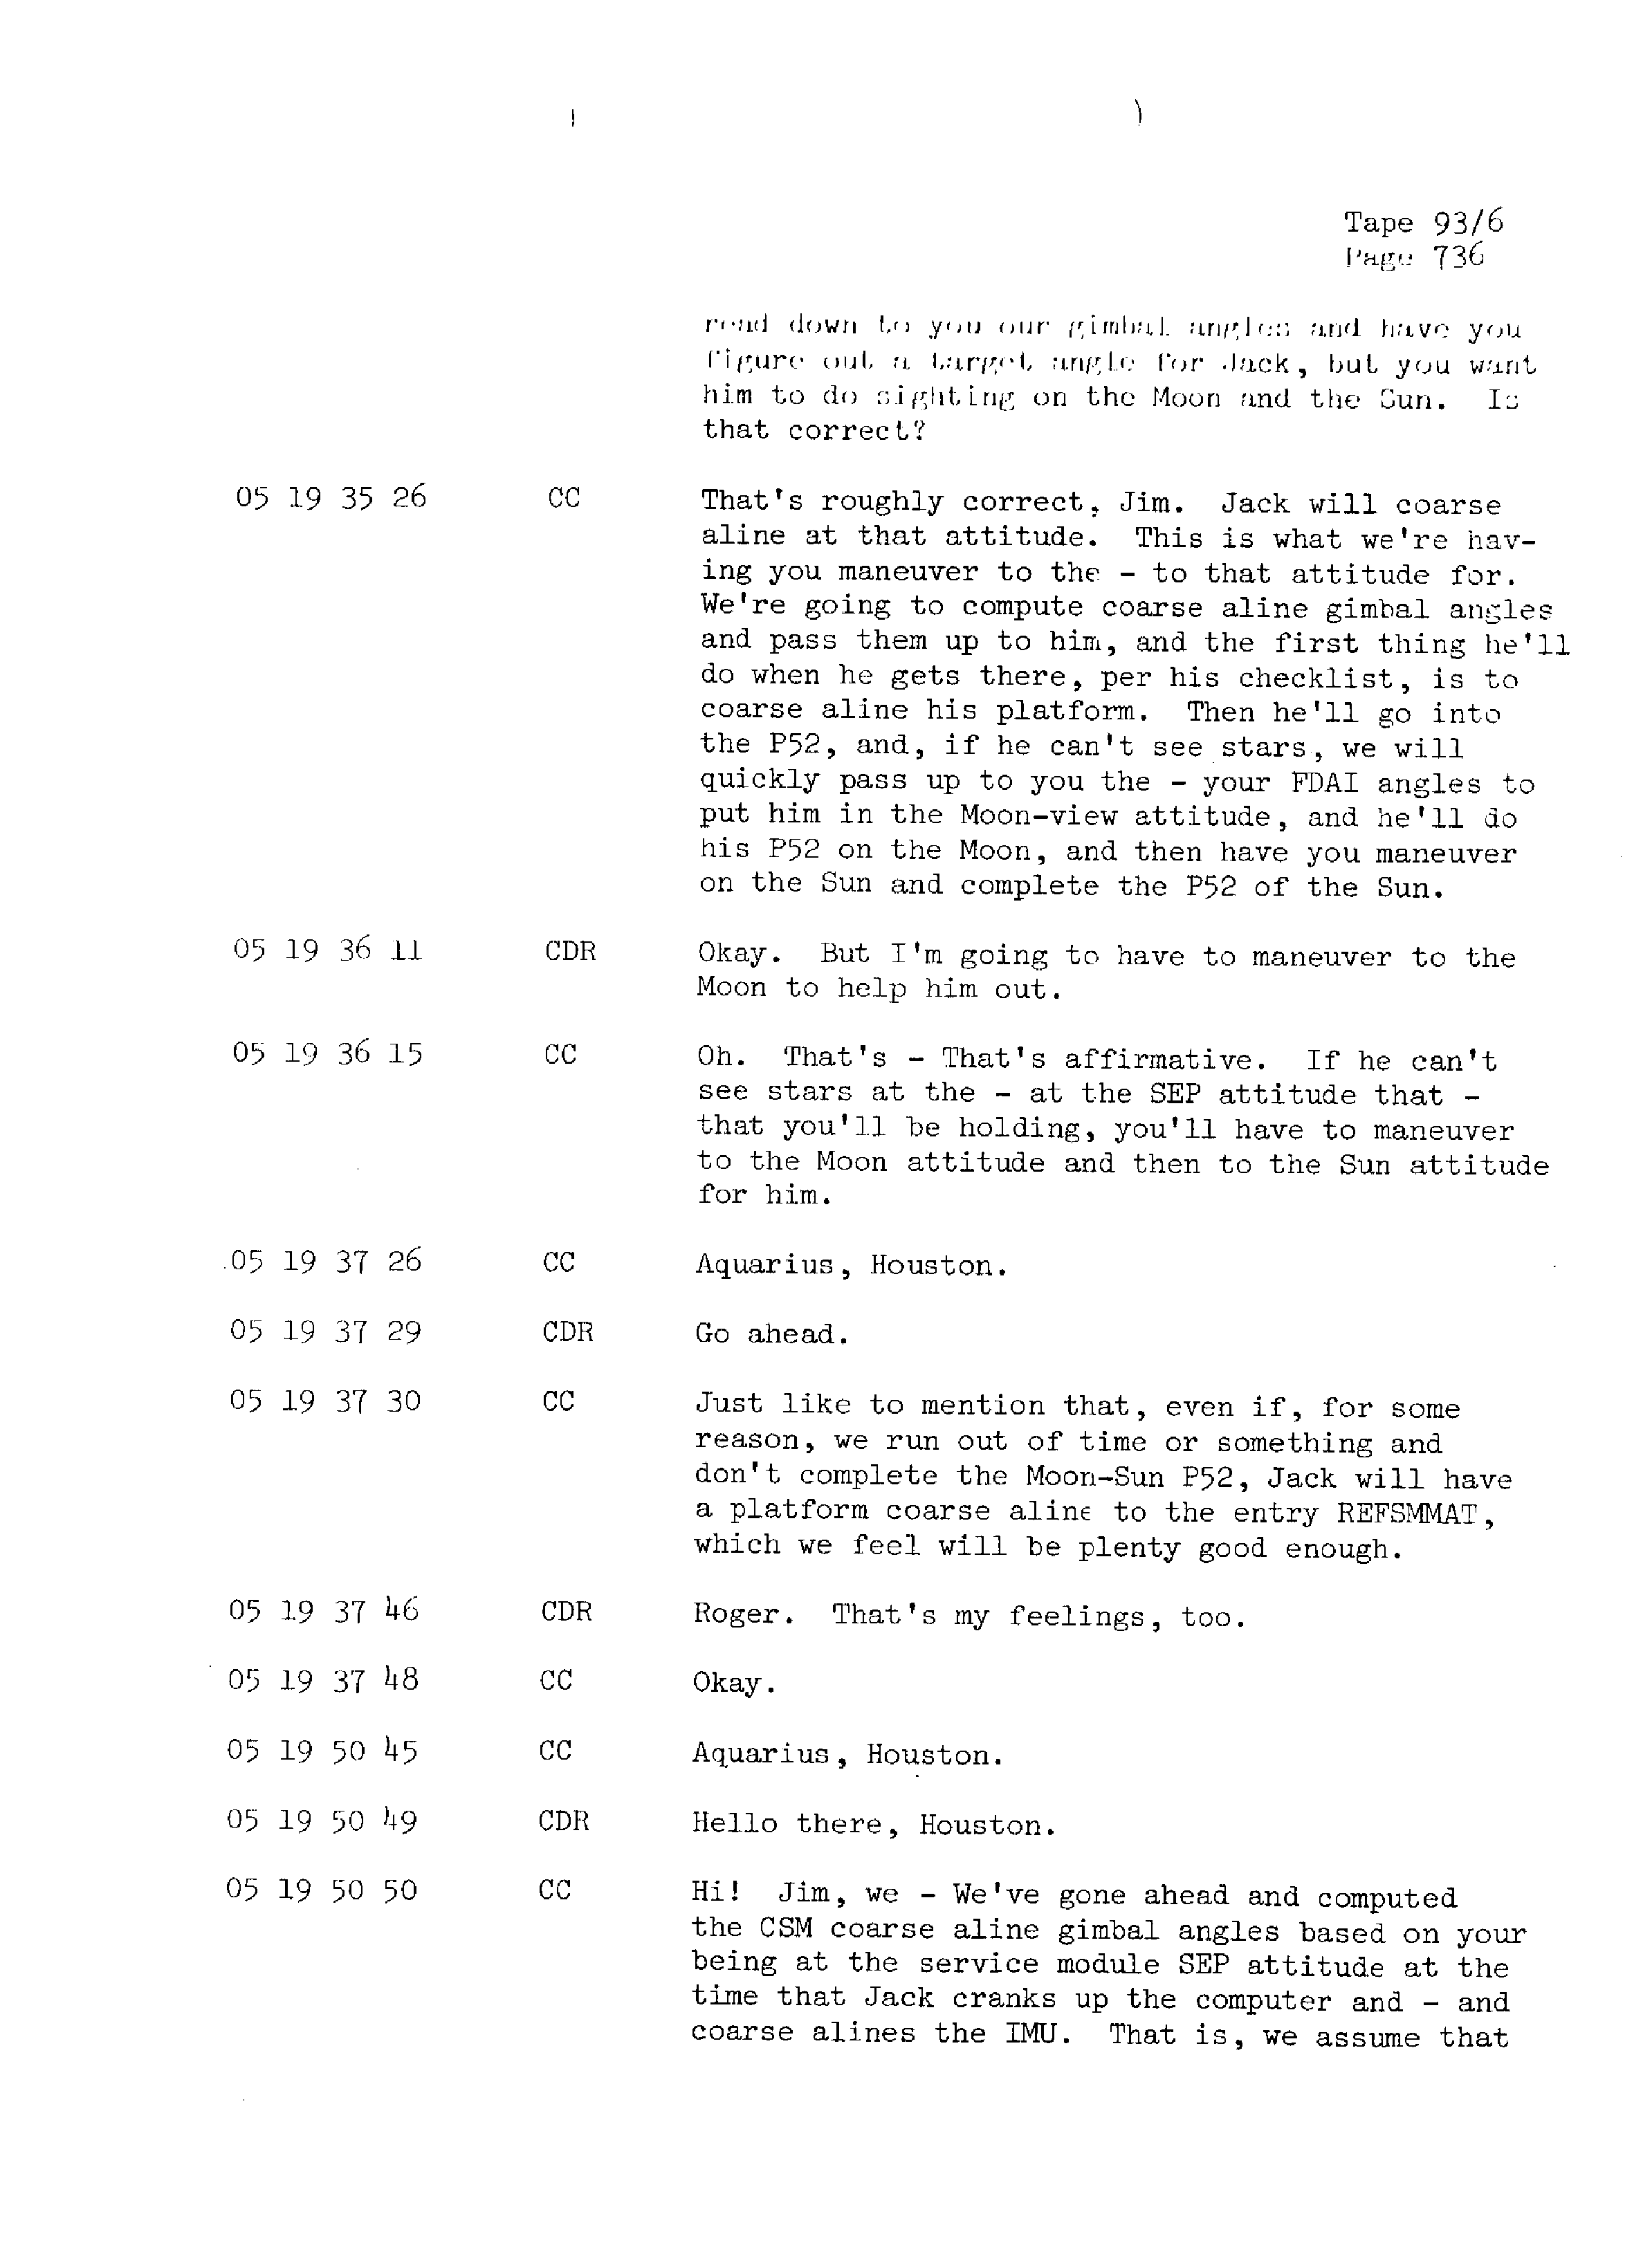 Page 743 of Apollo 13’s original transcript